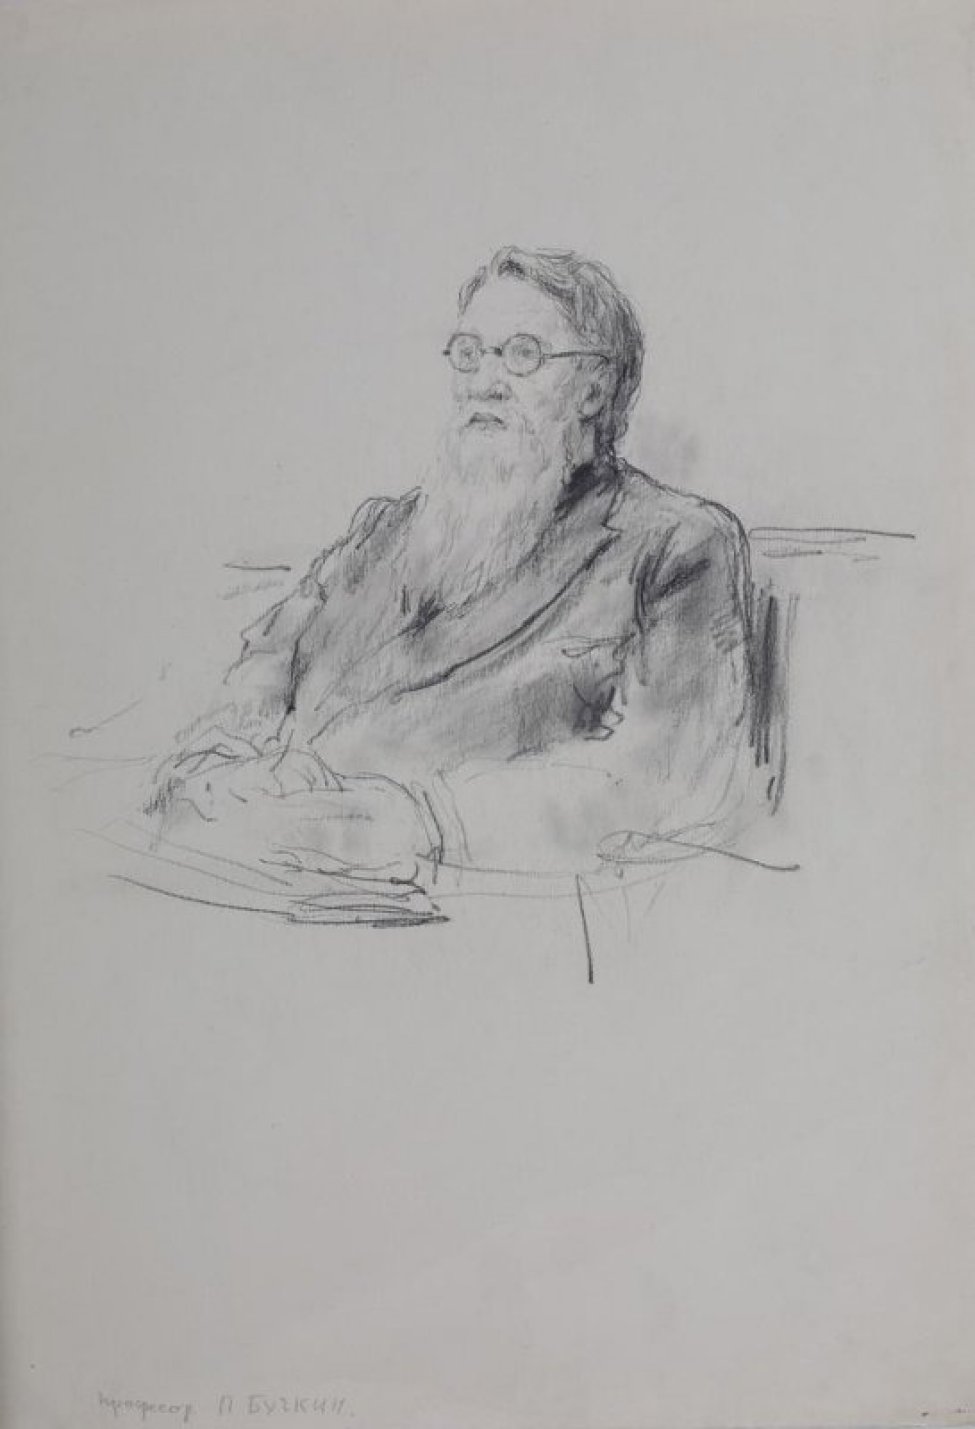 Изображен сидящий в 3/4 повороте влево старик с белой бородой, в очках, в пальто с отворотами.